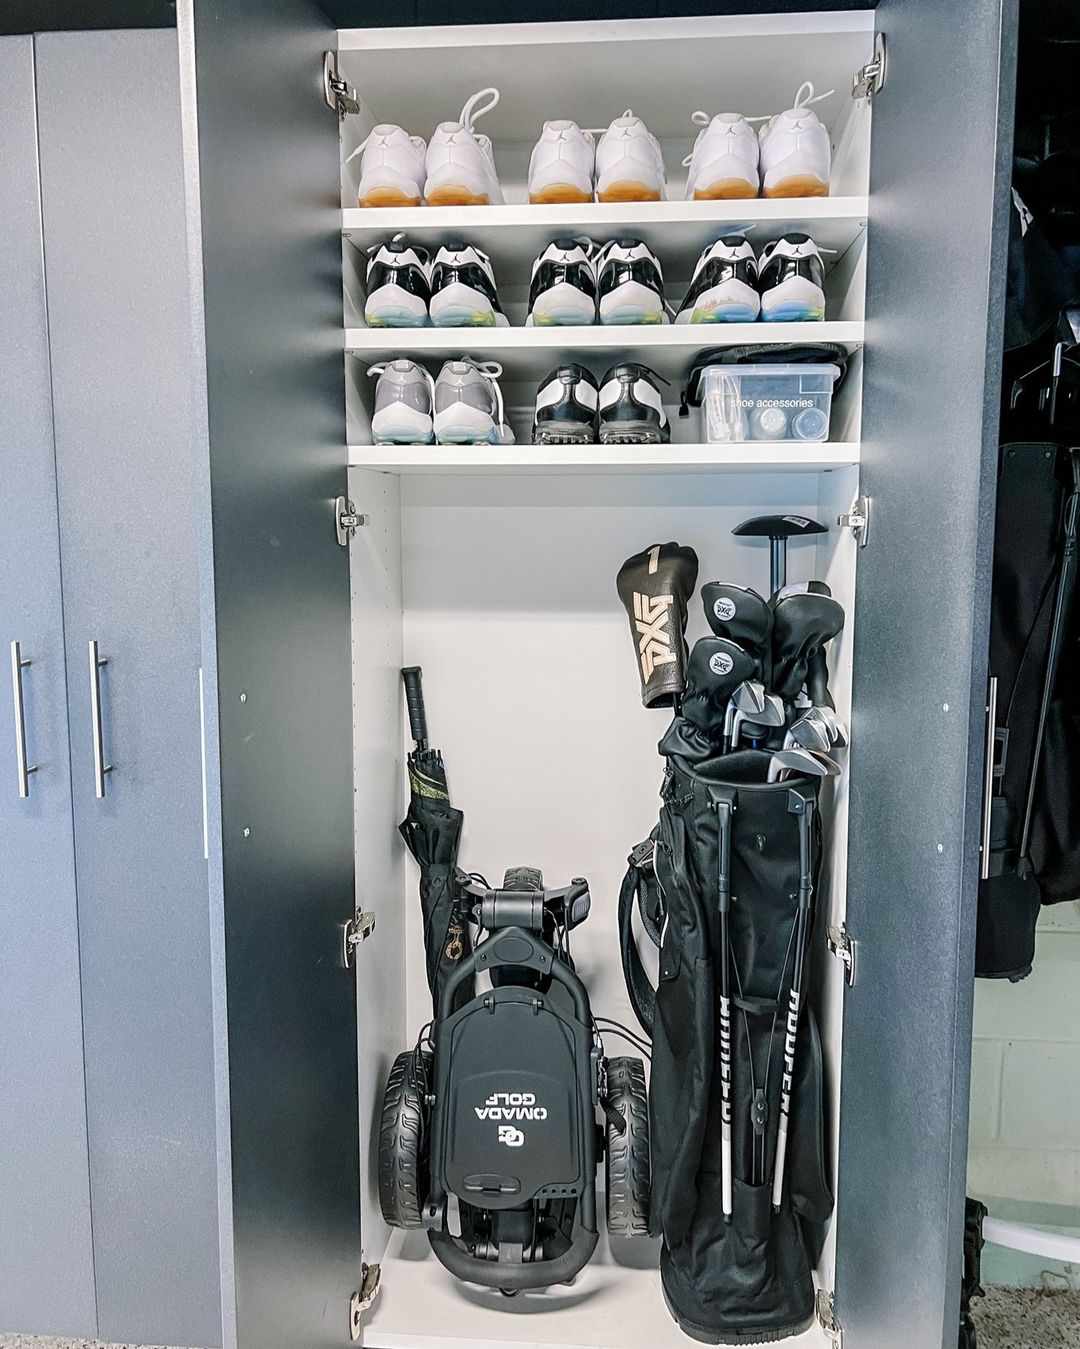 Equipamento de golfe armazenado em um armário de garagem